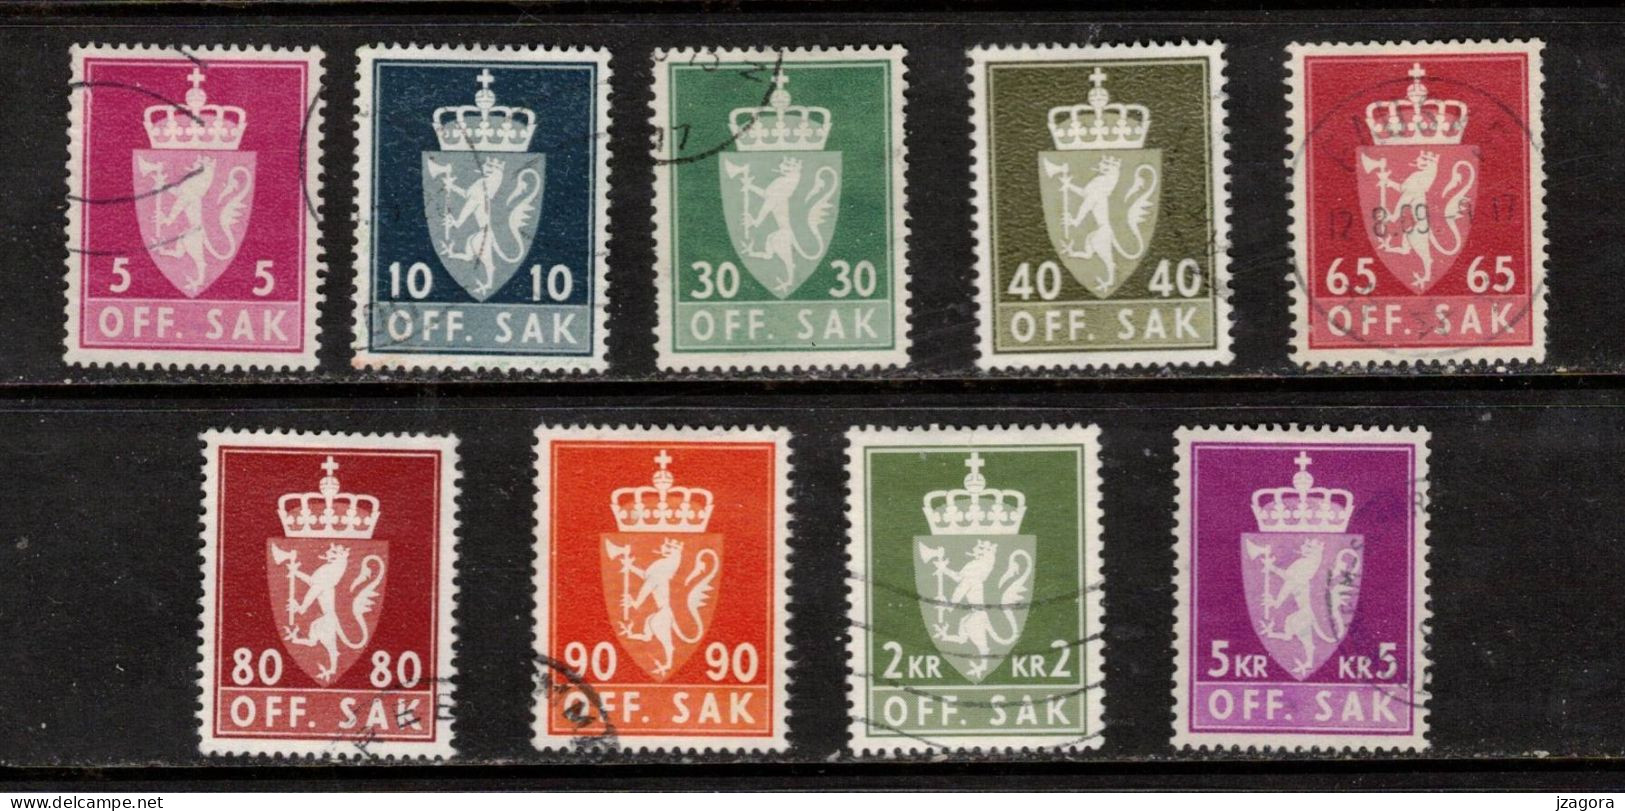 NORWAY NORGE NORWEGEN NORVÈGE 1969 - 1973 DIENSTMARKEN OFFICIALS OFF.SAK.  COAT OF ARMS STAATSWAPPEN USED - Dienstzegels